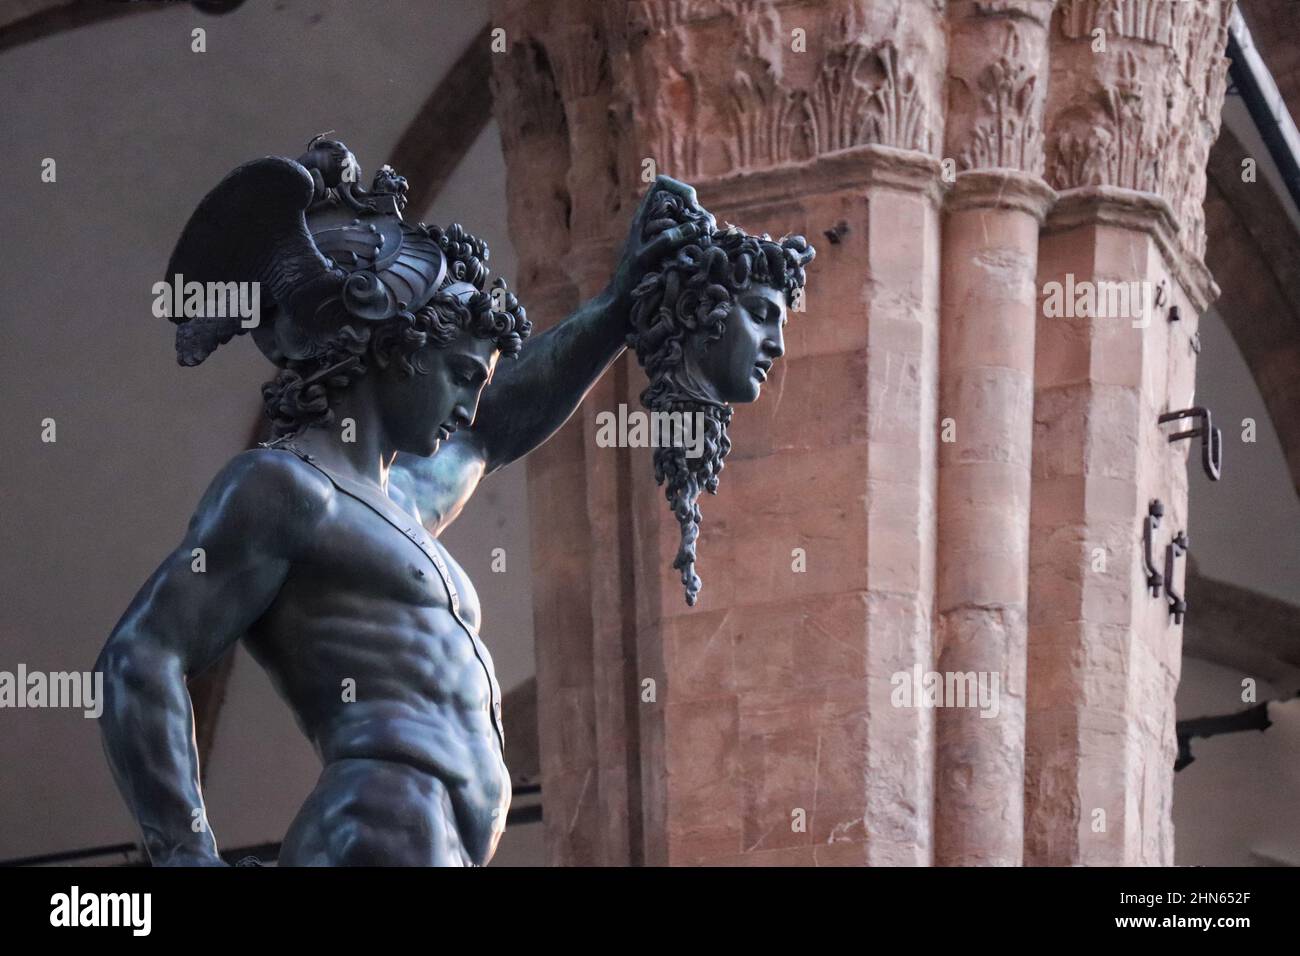 Florencia esculturas / escultura di Firenze Foto de stock